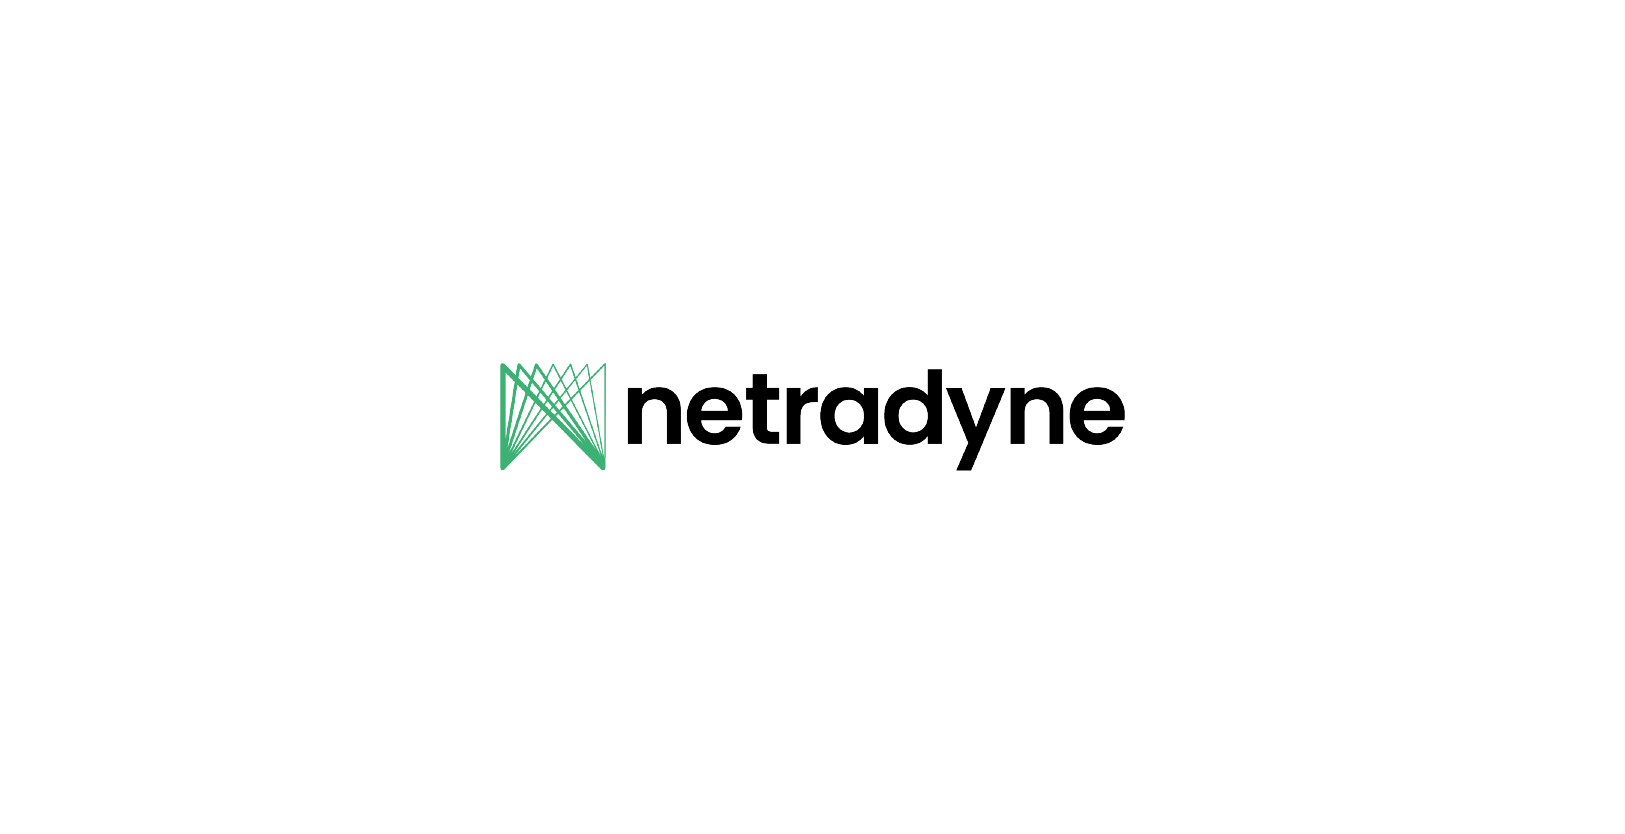 Vision Fund investment portfolio company Netradyne's logo